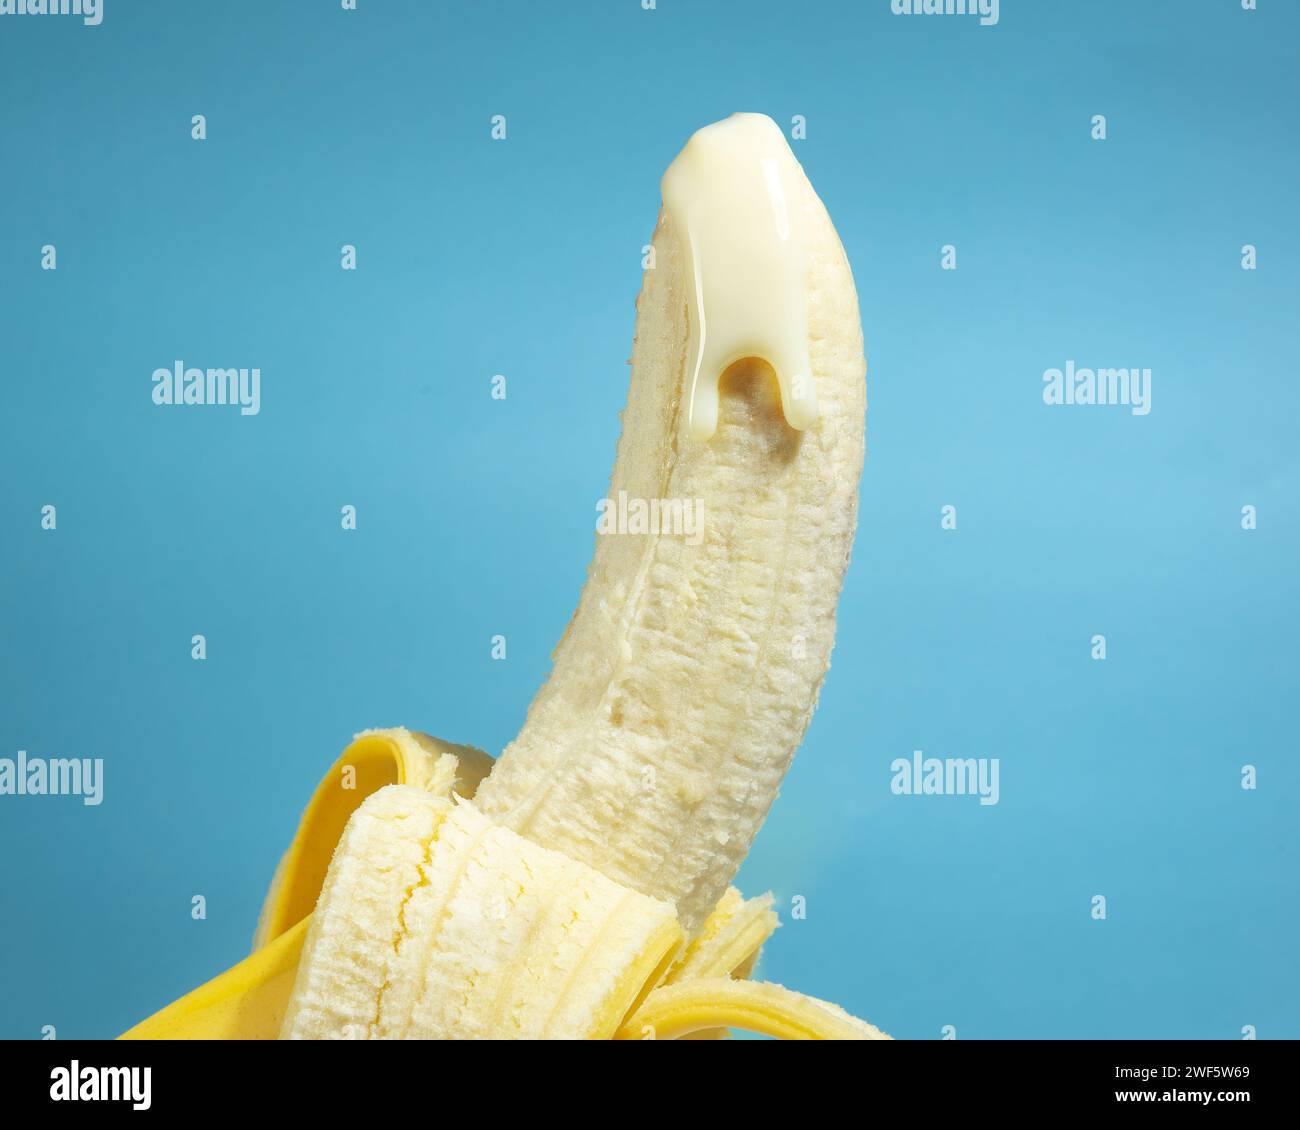 Banane avec peau et laitière sur fond bleu, concept de pénis masculin, éducation sexuelle de santé, pas de gens Banque D'Images